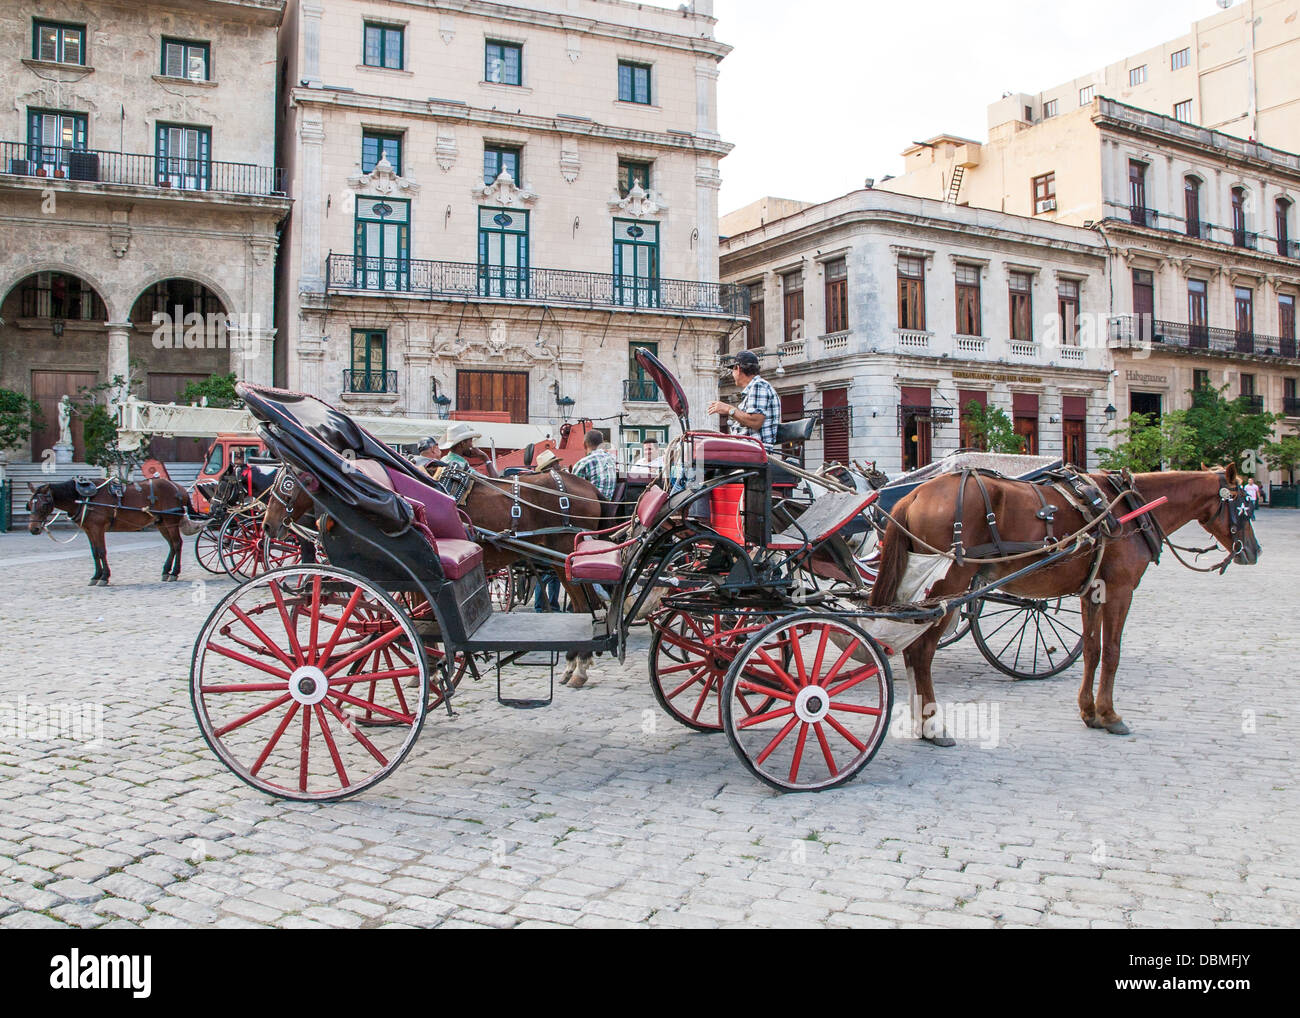 Touri-Taxi- Pferdegespann in Havanna Kuba Stockfoto